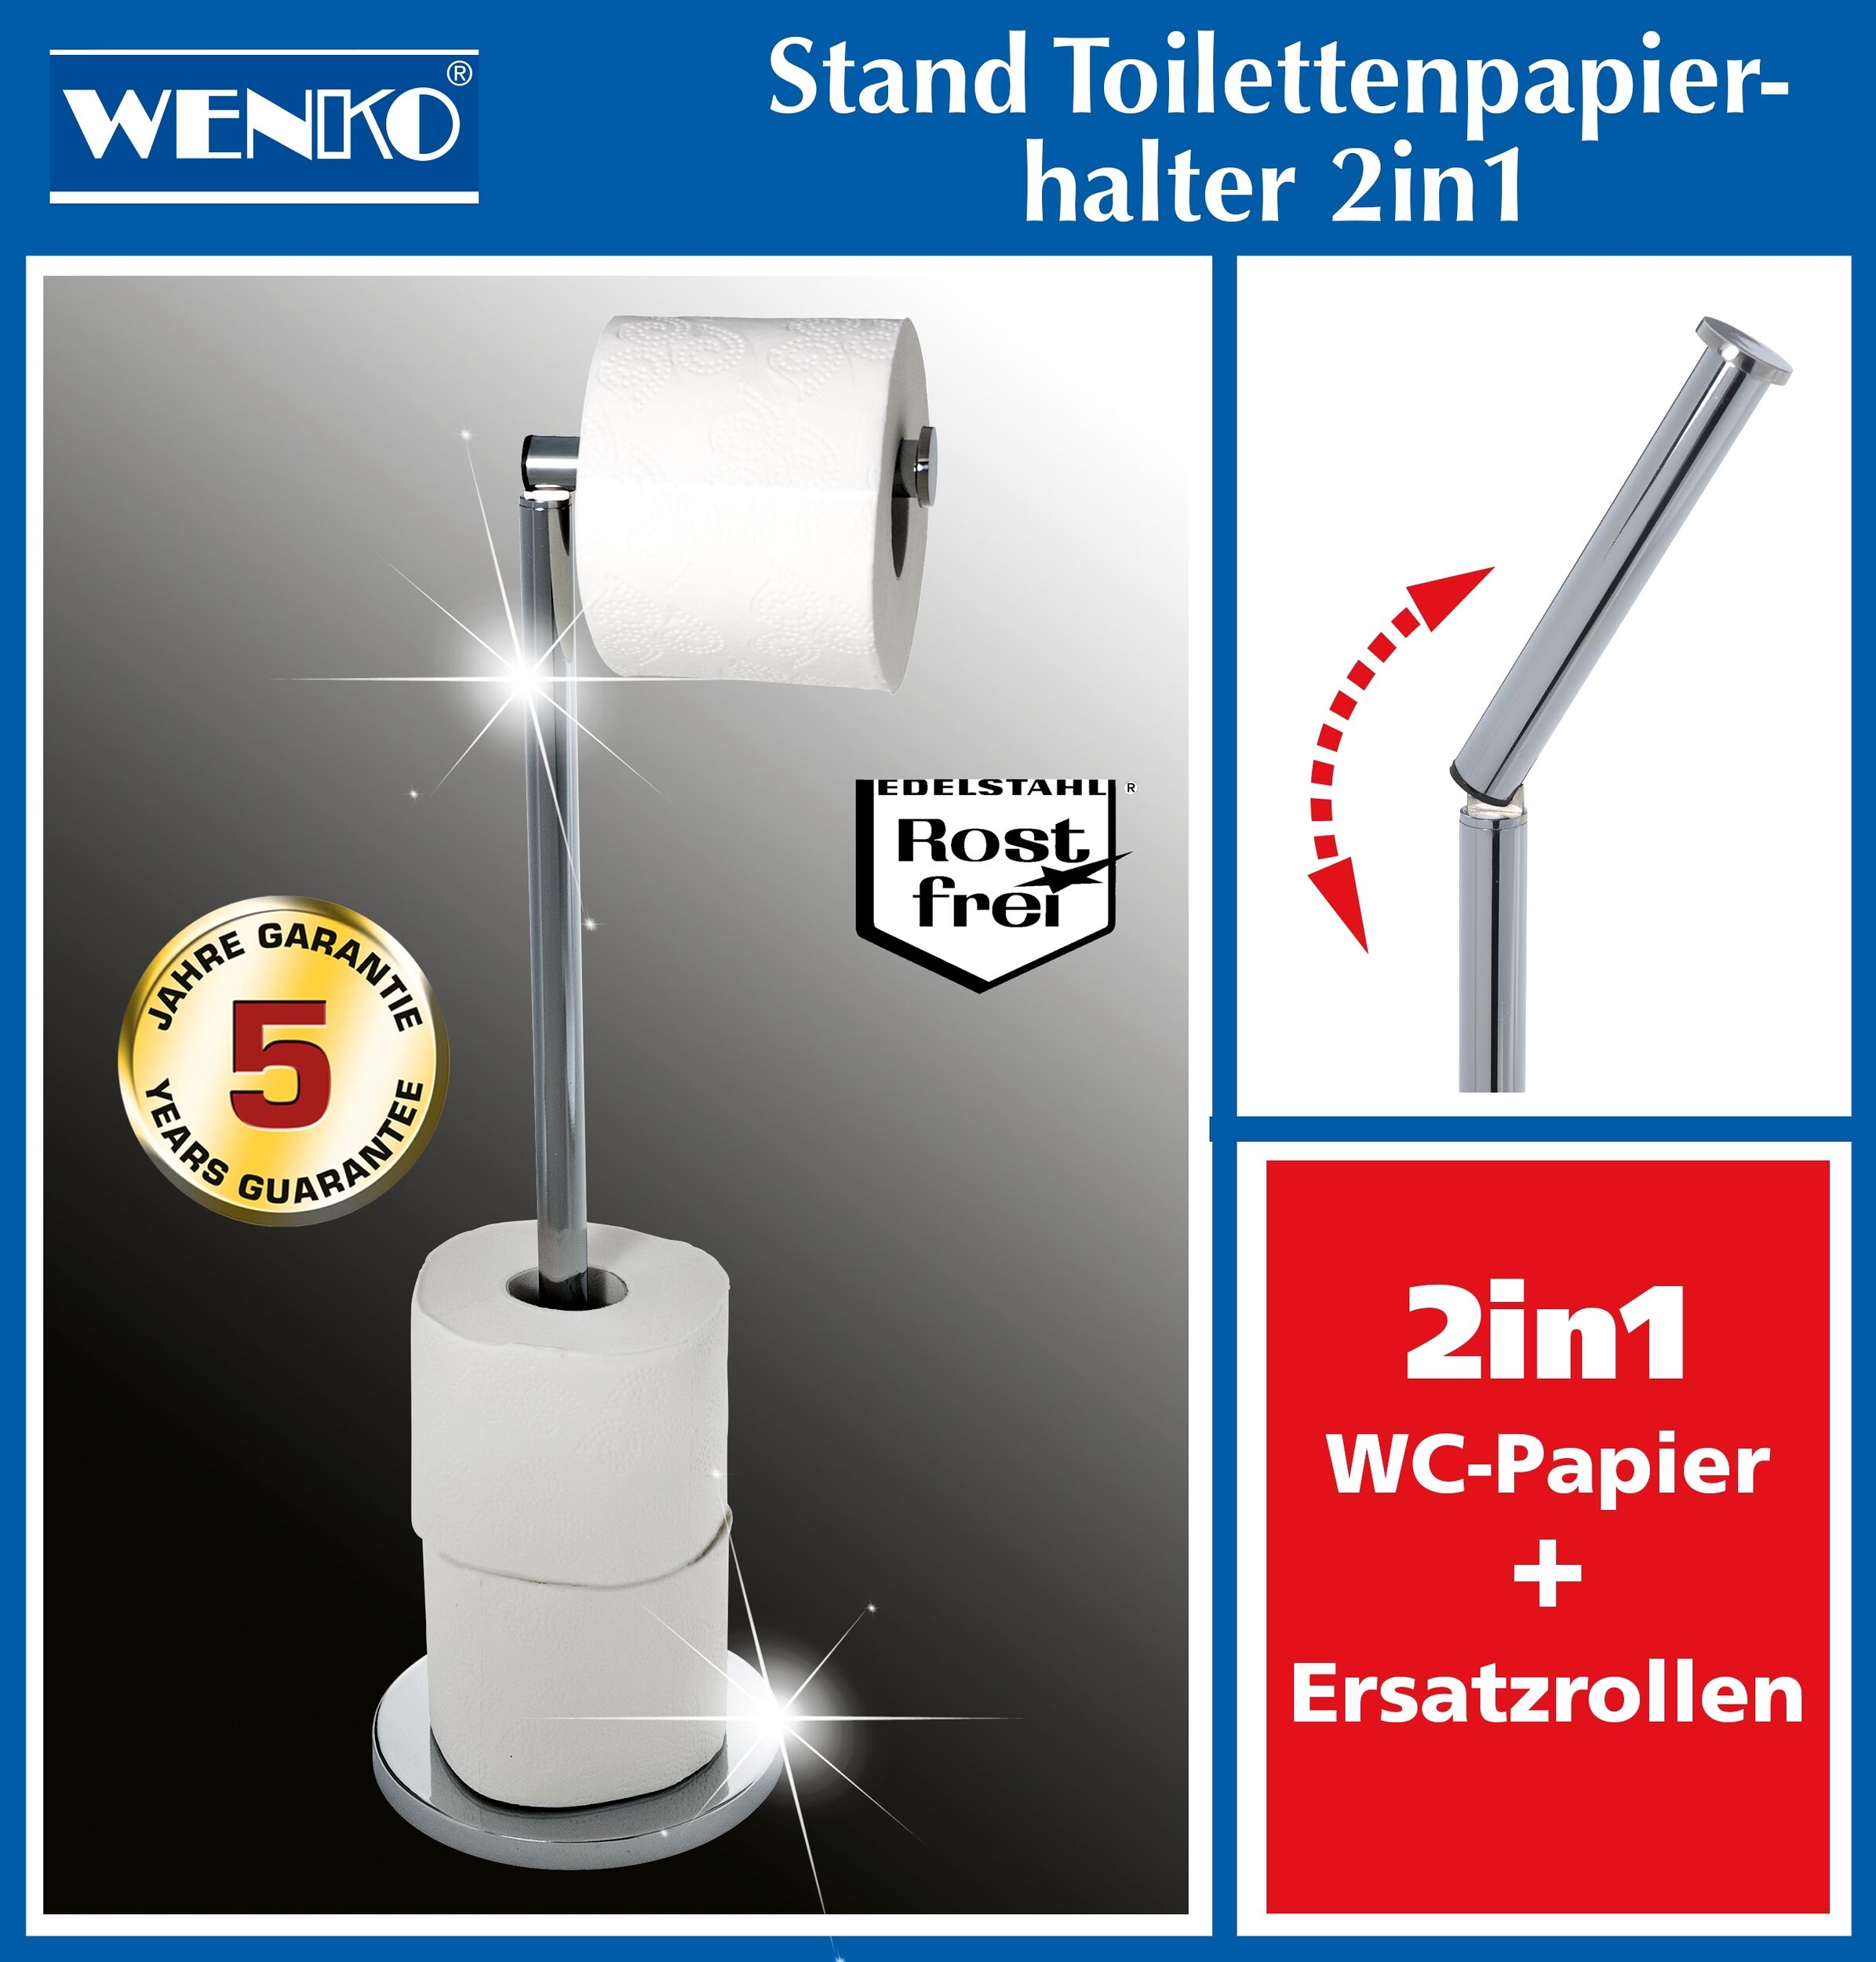 Stand Maximex Ersatzrollen Toilettenpapierhalter, bis zu 4 Edelstahl, platzsparend, für 2in1